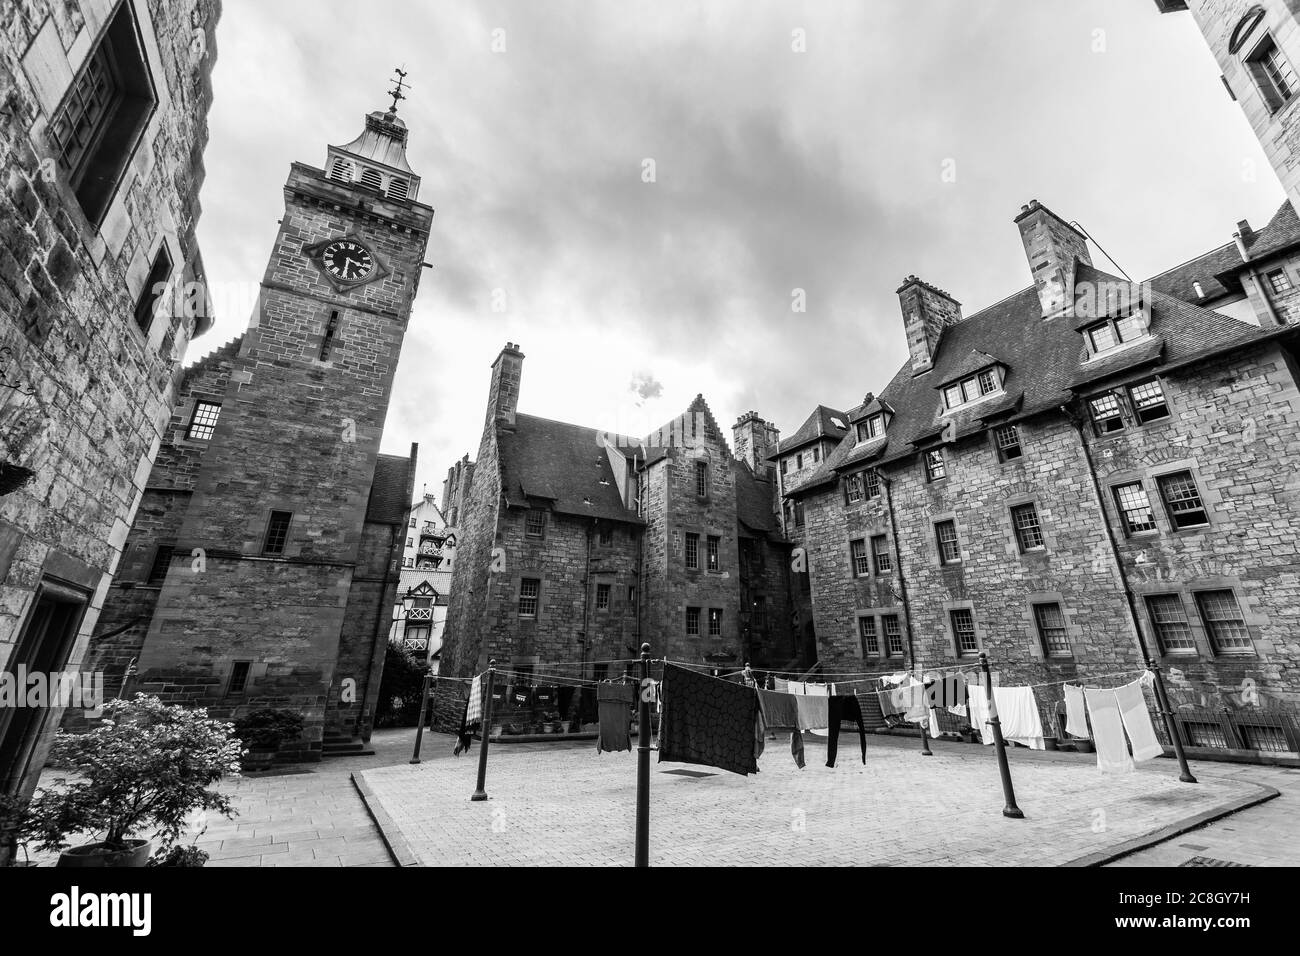 Un bel aperçu dans une ville ancienne et traditionnelle d'Édimbourg. Perspective noir et blanc dans les coins écossais. Banque D'Images